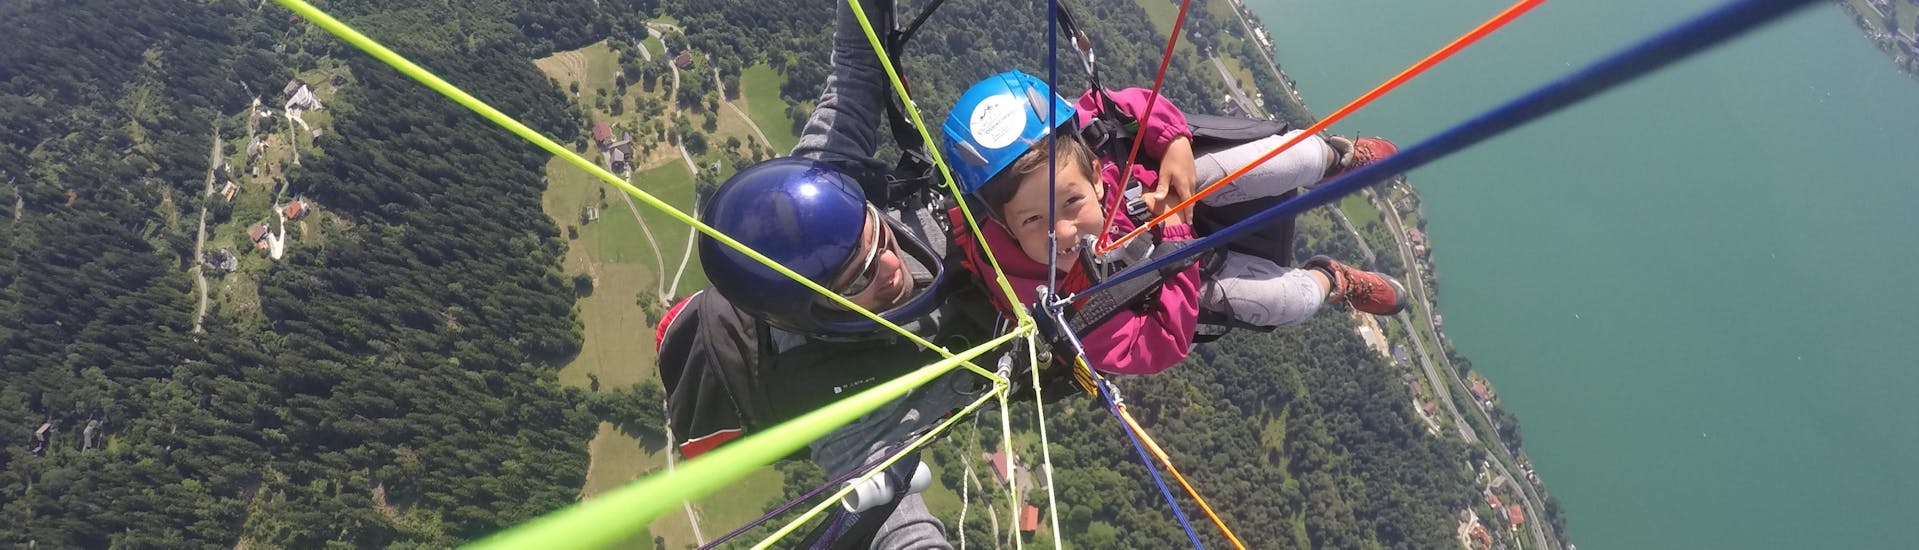 Volo acrobatico in parapendio biposto a Bodensdorf - Gerlitzen Alpe.